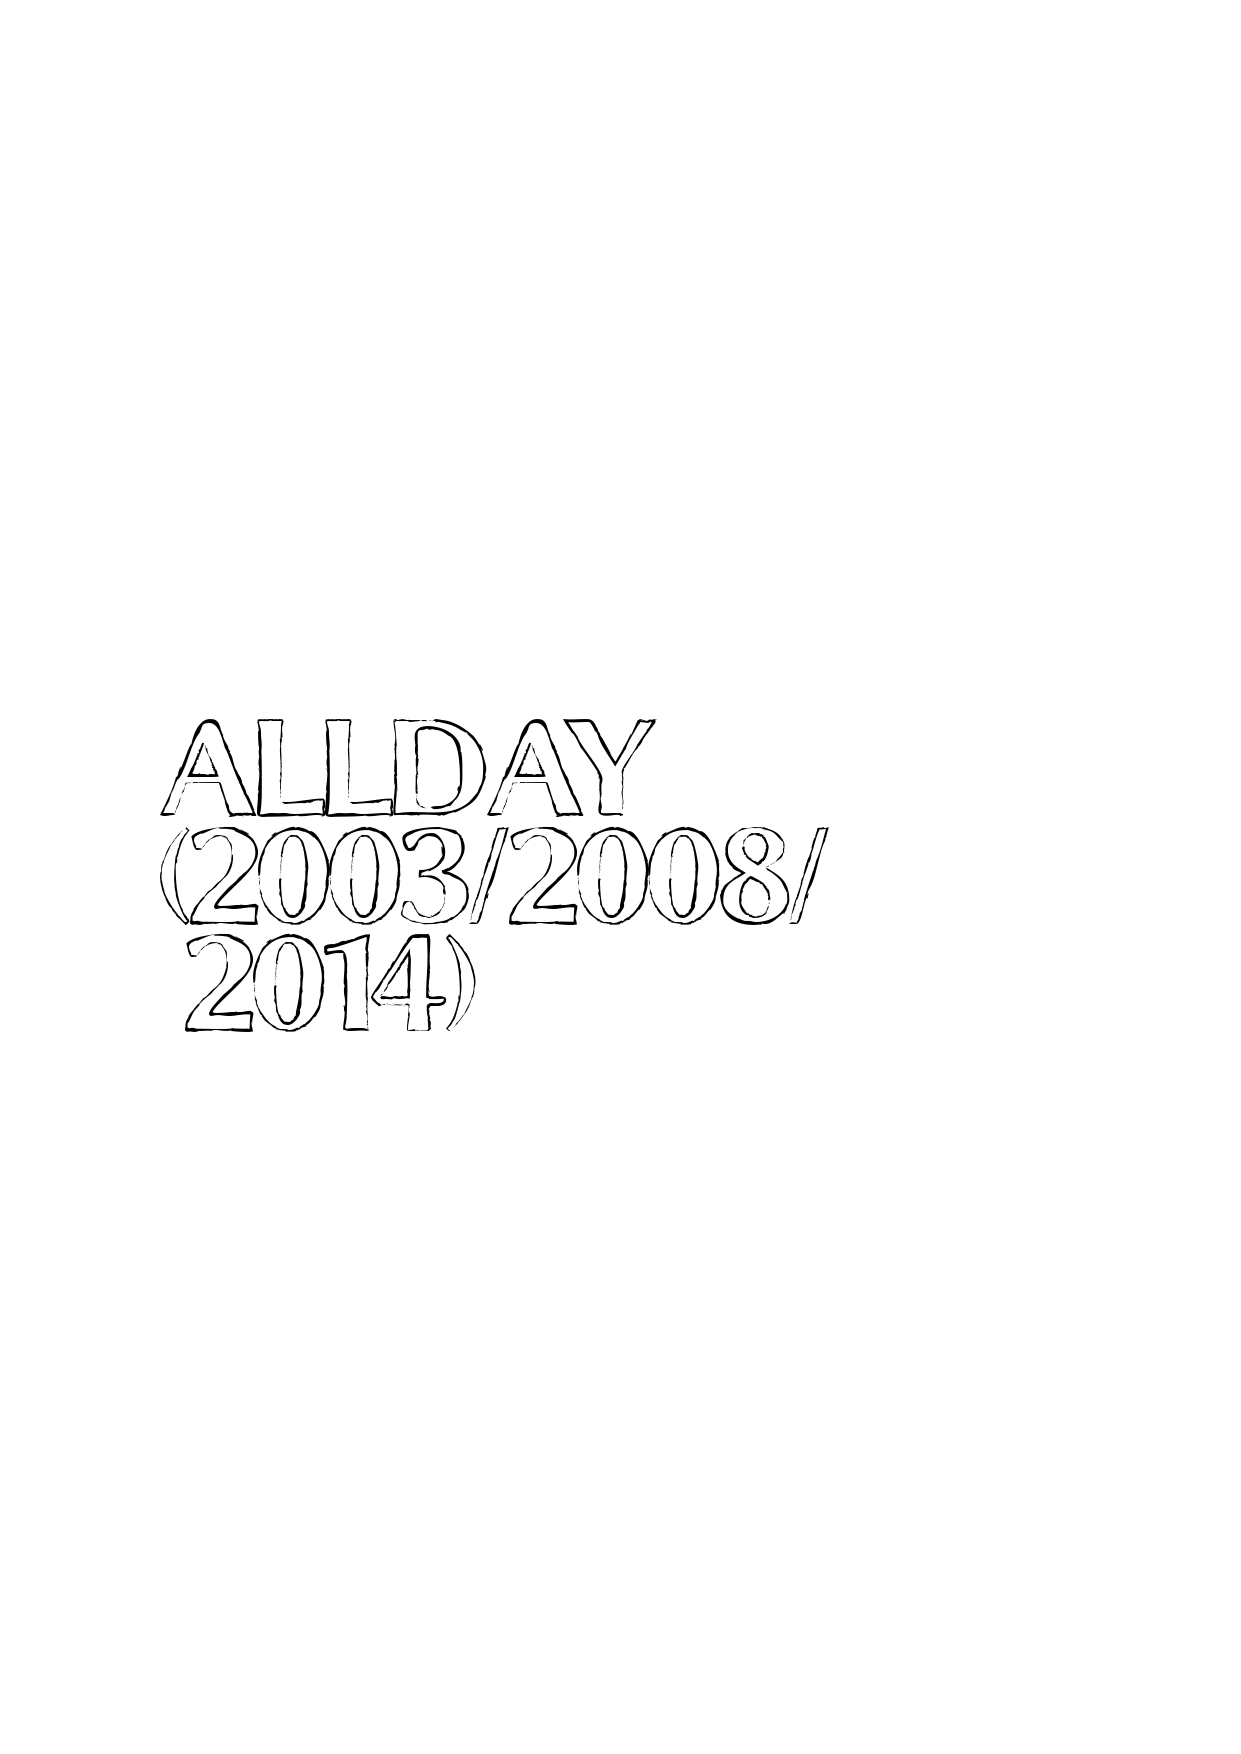 AllDay(2003/2008/2014)